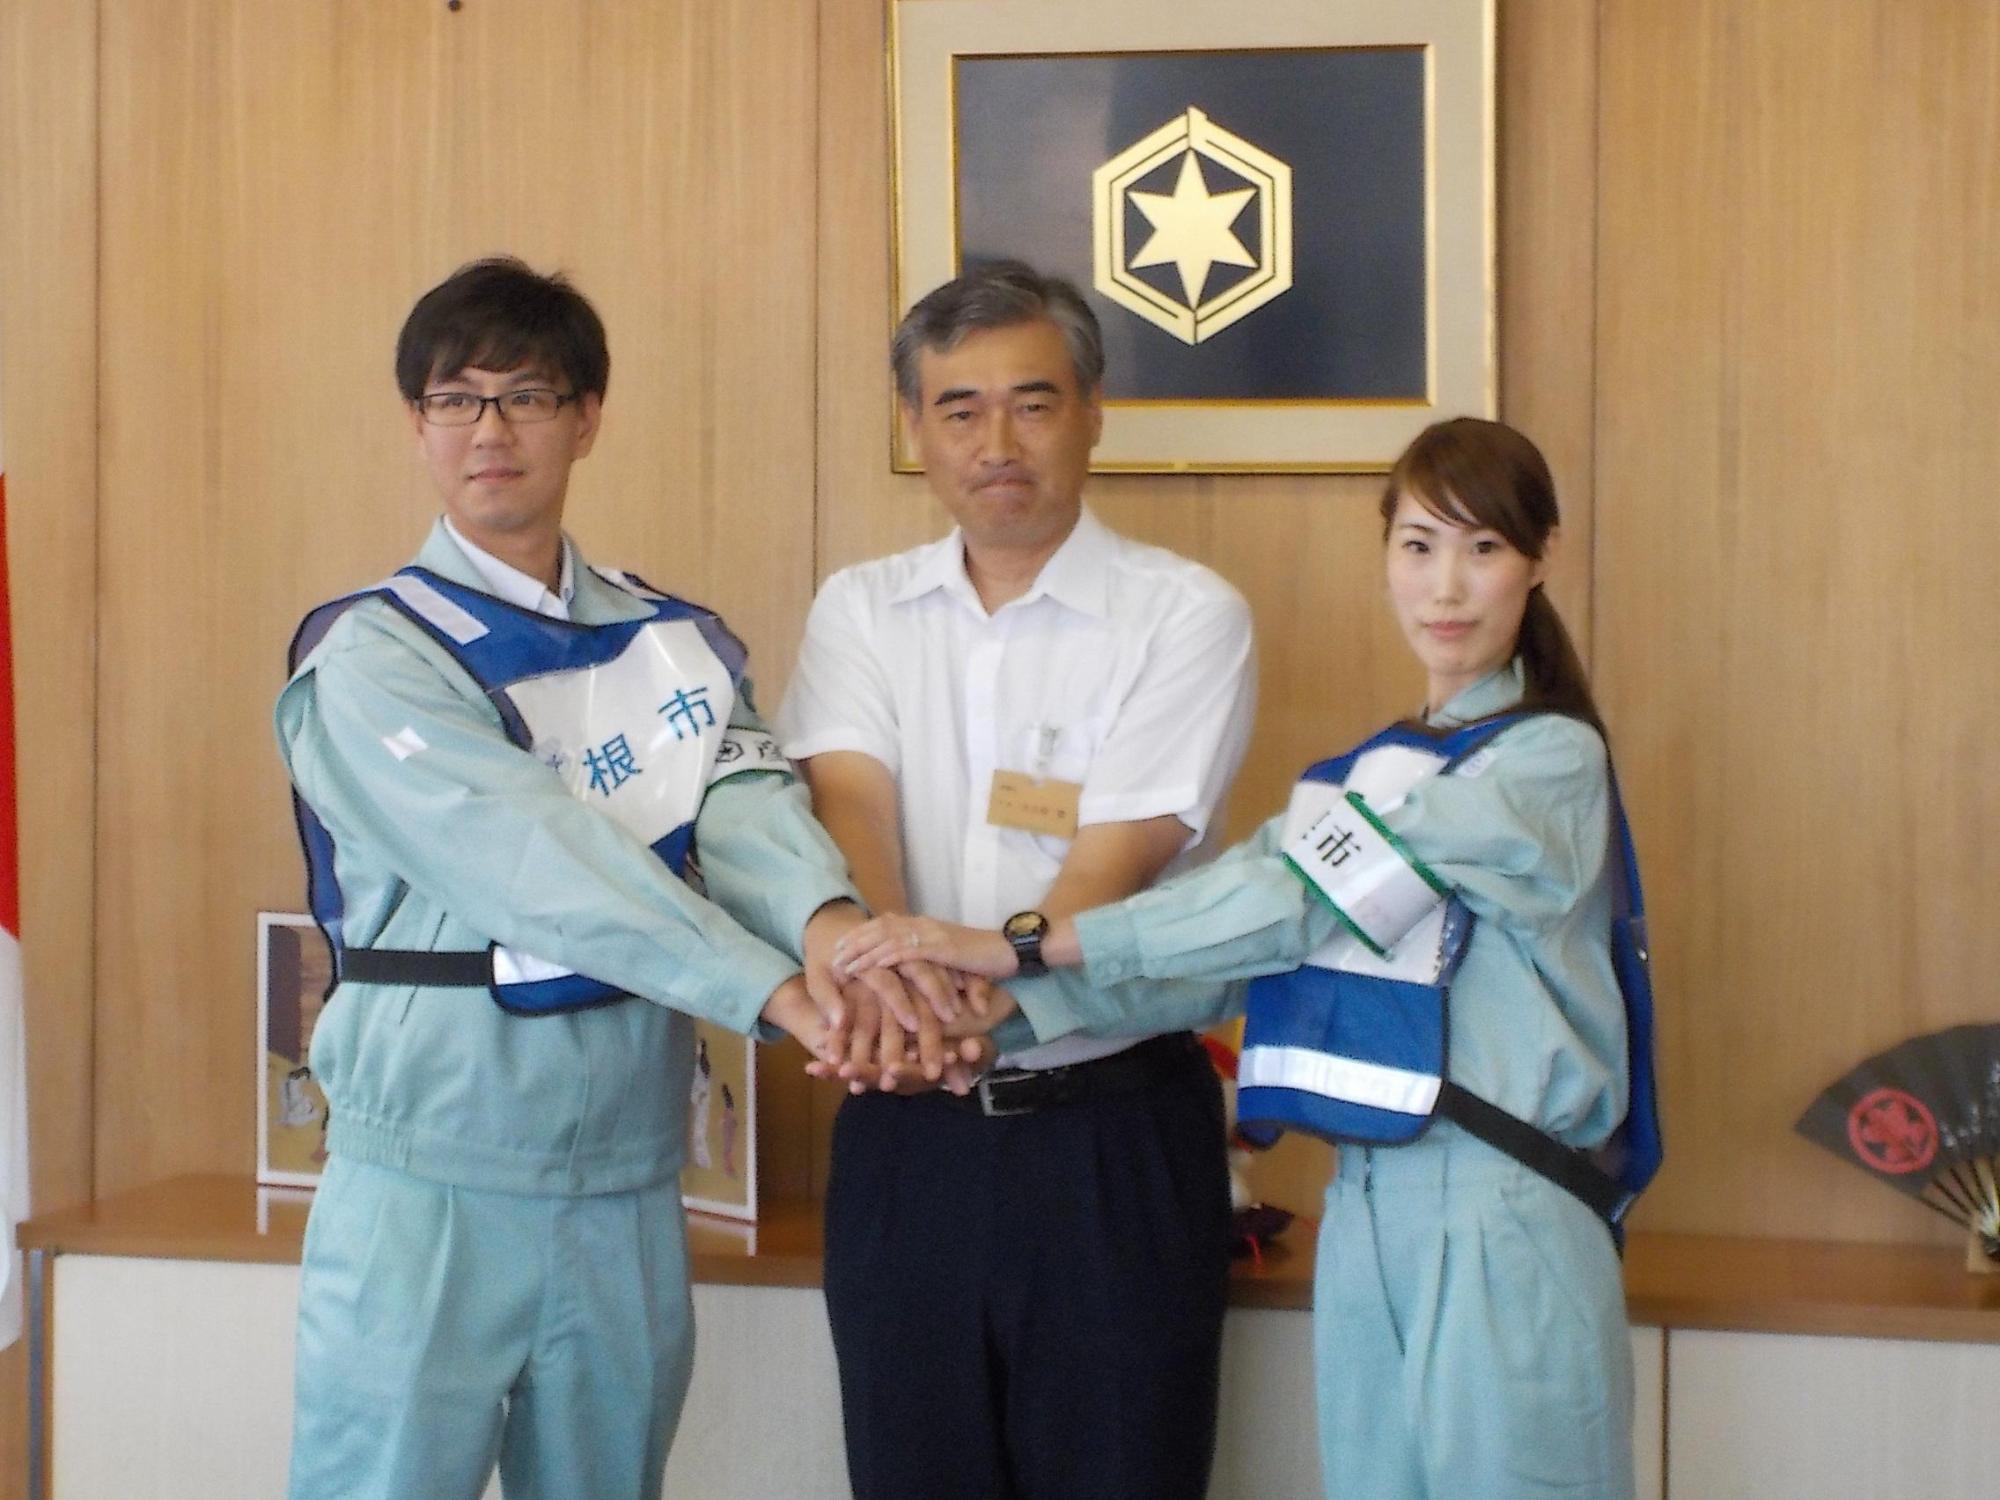 熊本に派遣される2名の職員と握手を交わす市長の写真